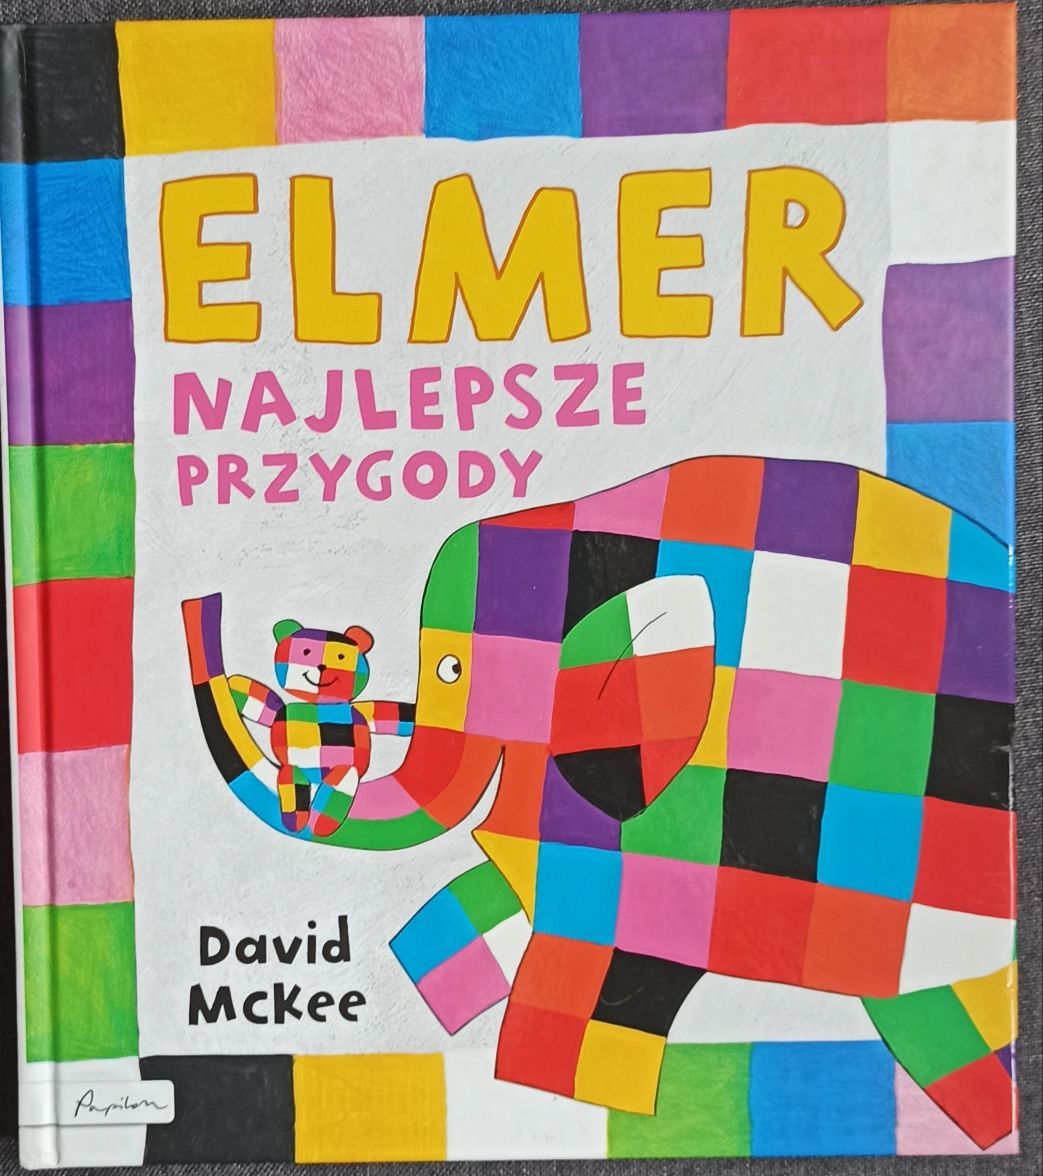 Elmer najlepsze przygody David McKee